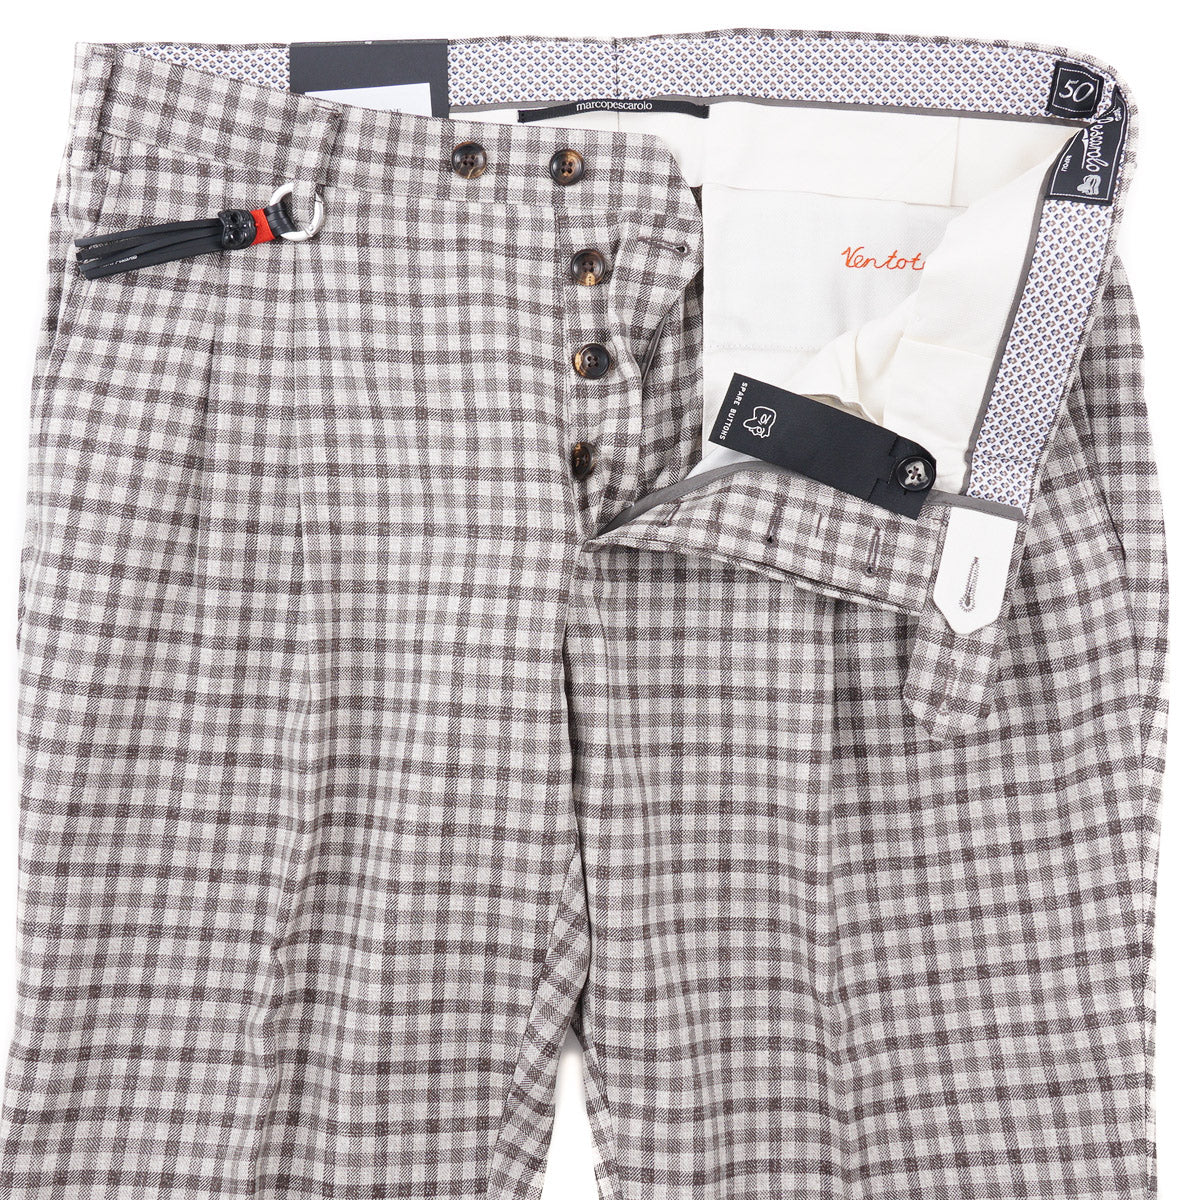 Marco Pescarolo Wool Dress Pants - Top Shelf Apparel